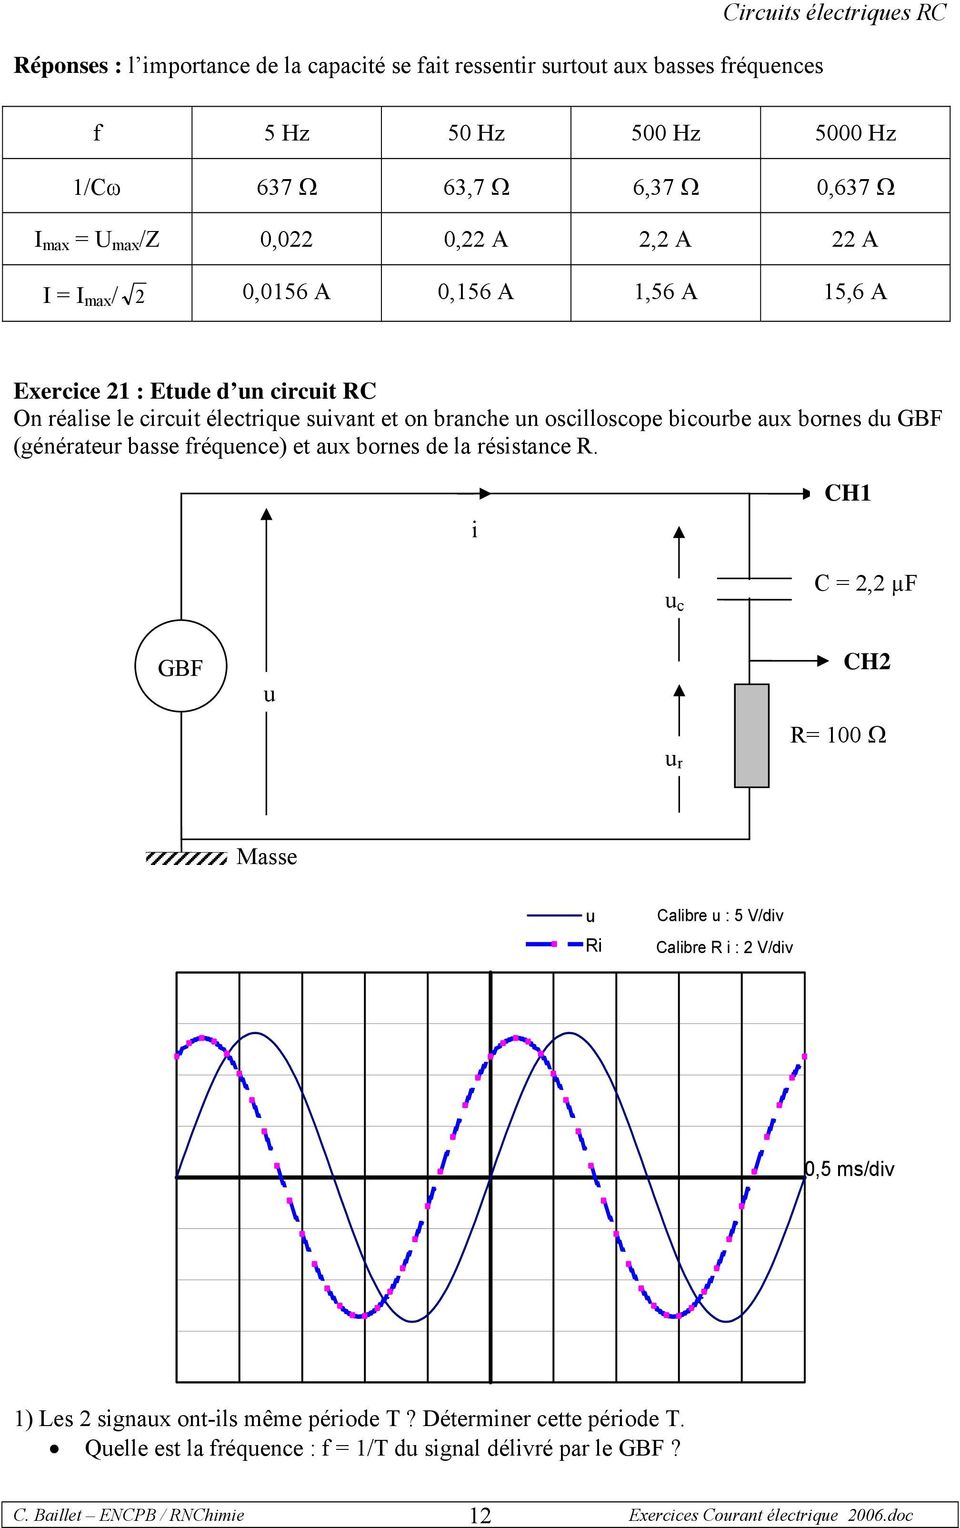 bornes du GBF (générateur basse fréquence) et aux bornes de la résistance R.